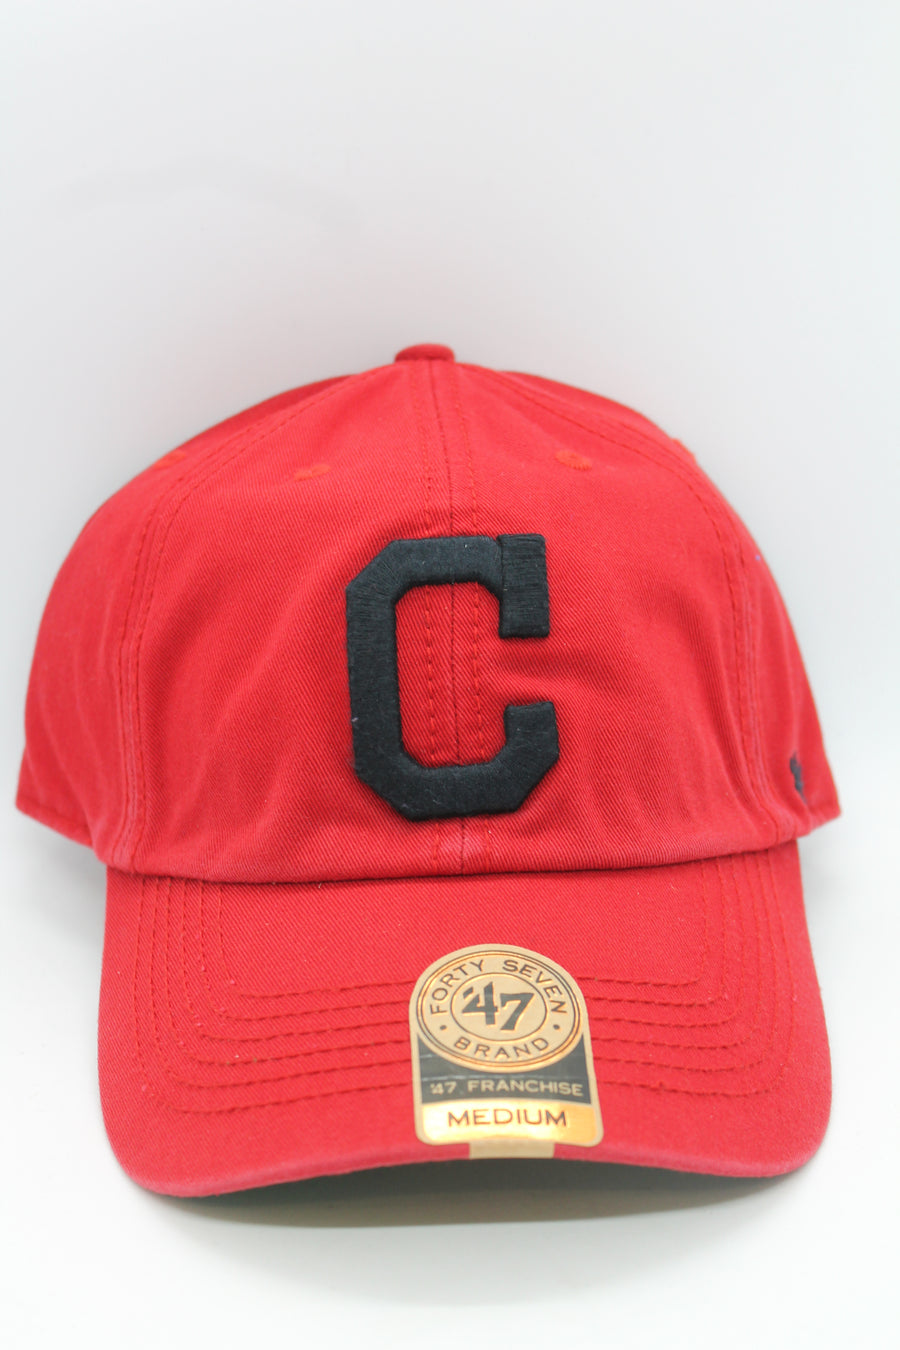 MLB Cleveland Indians 47 Brand Franchise Flex Hat